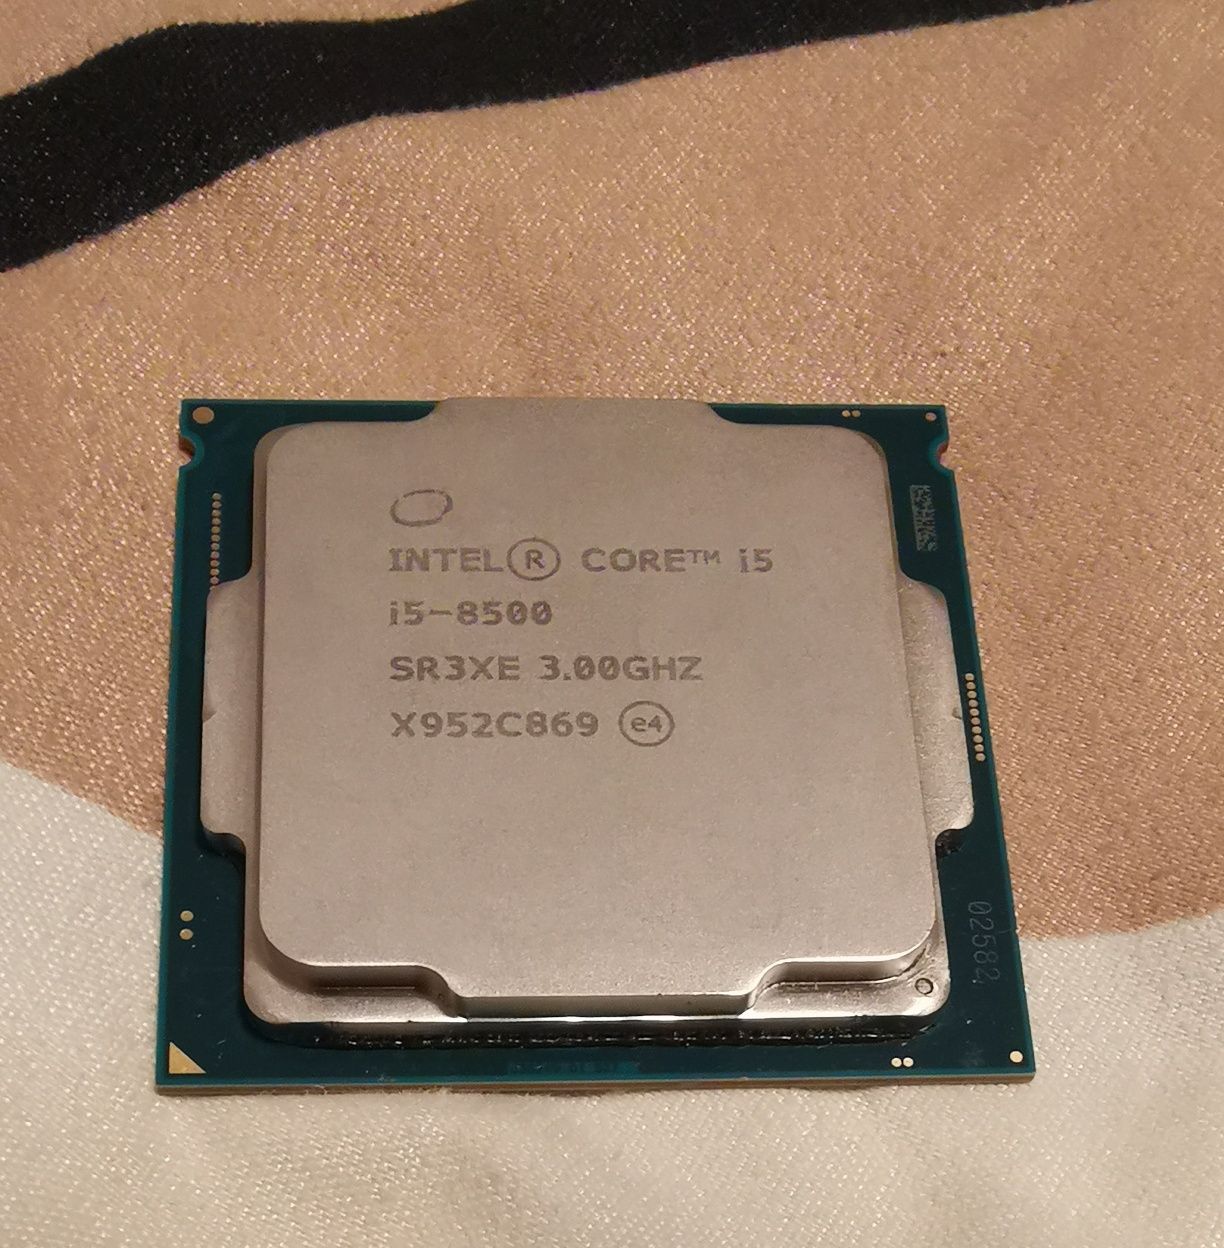 Procesor Intel Coffee Lake Core i5-8500, 3.0GHz, 9MB, 65W, NOU !!!